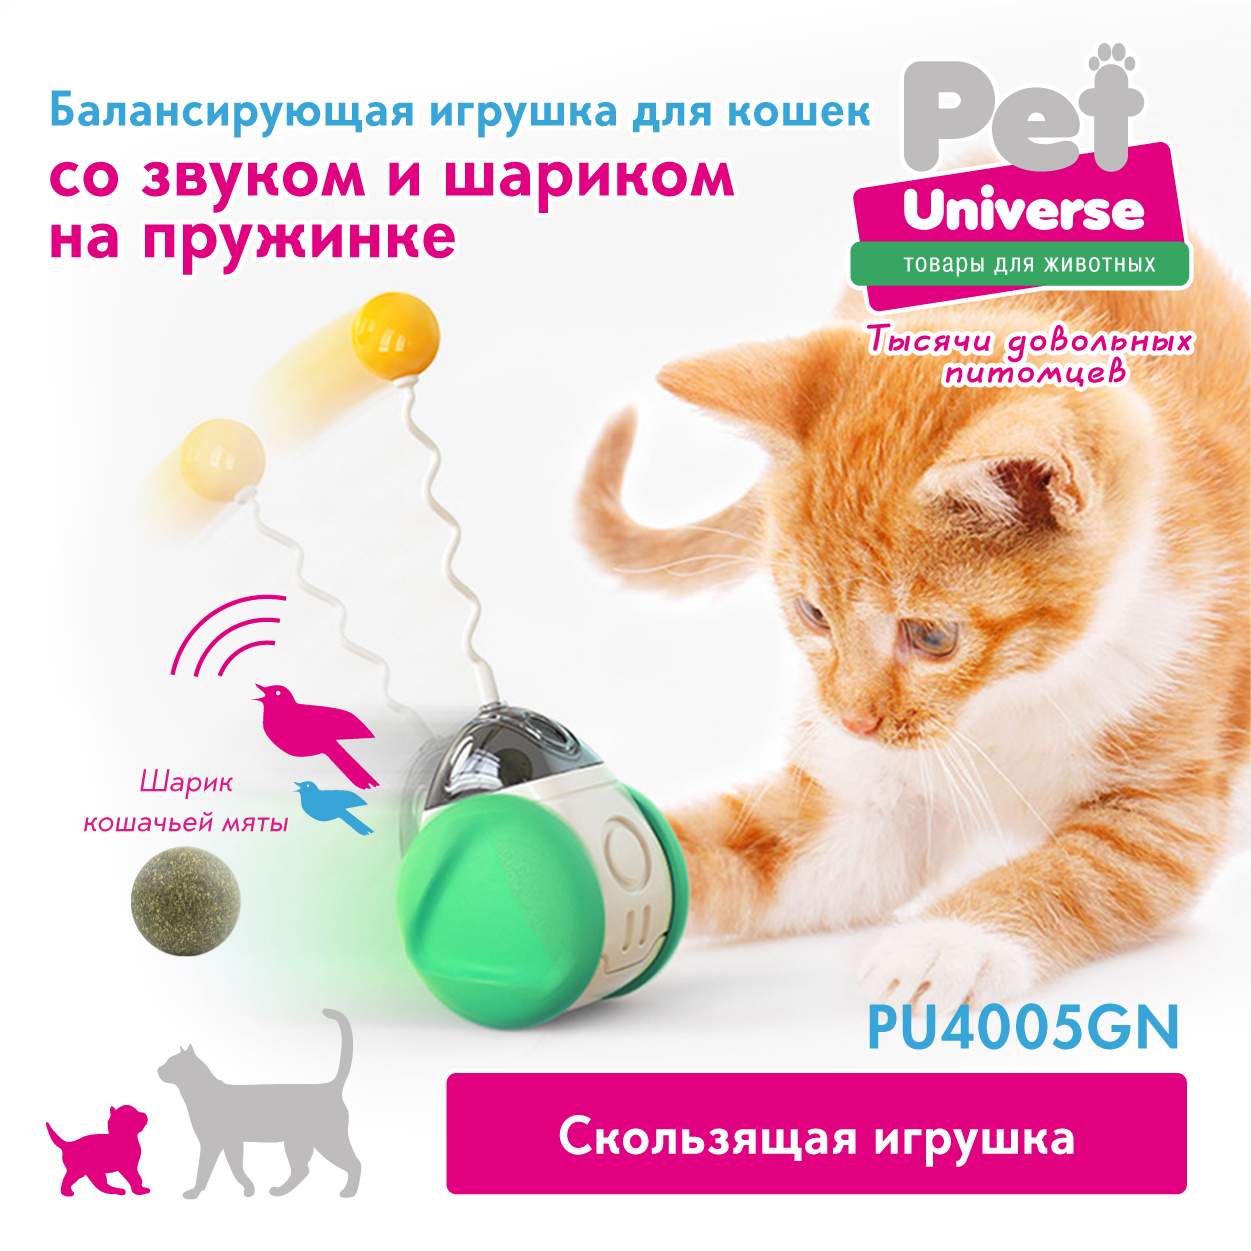 Игрушка неваляшка для кошек Pet Universe интерактивная, имитатор пения птиц  - отзывы покупателей на маркетплейсе Мегамаркет | Артикул  товара:600010704265